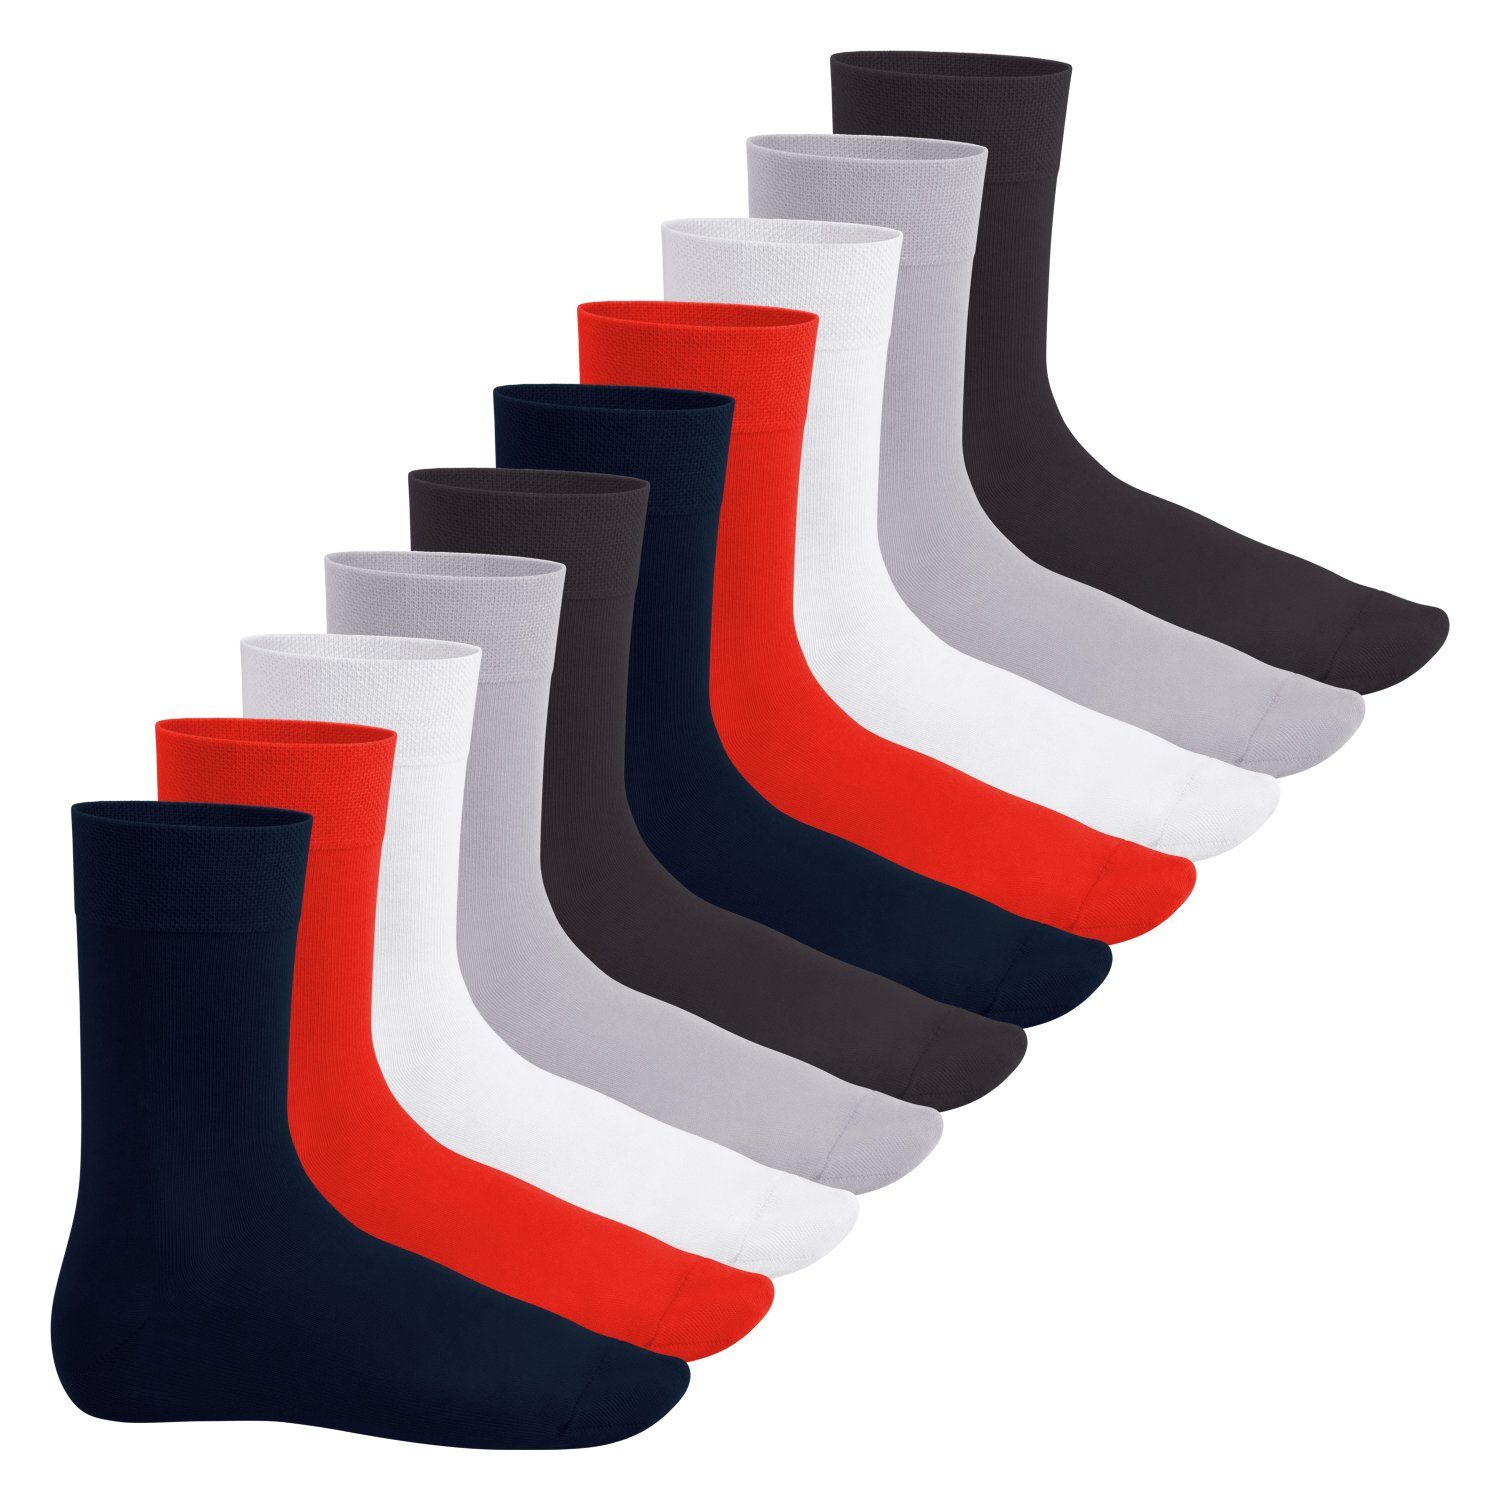 Footstar Basicsocken Everyday! Herren & Damen Socken (10 Paar) mit Baumwolle Metropolis